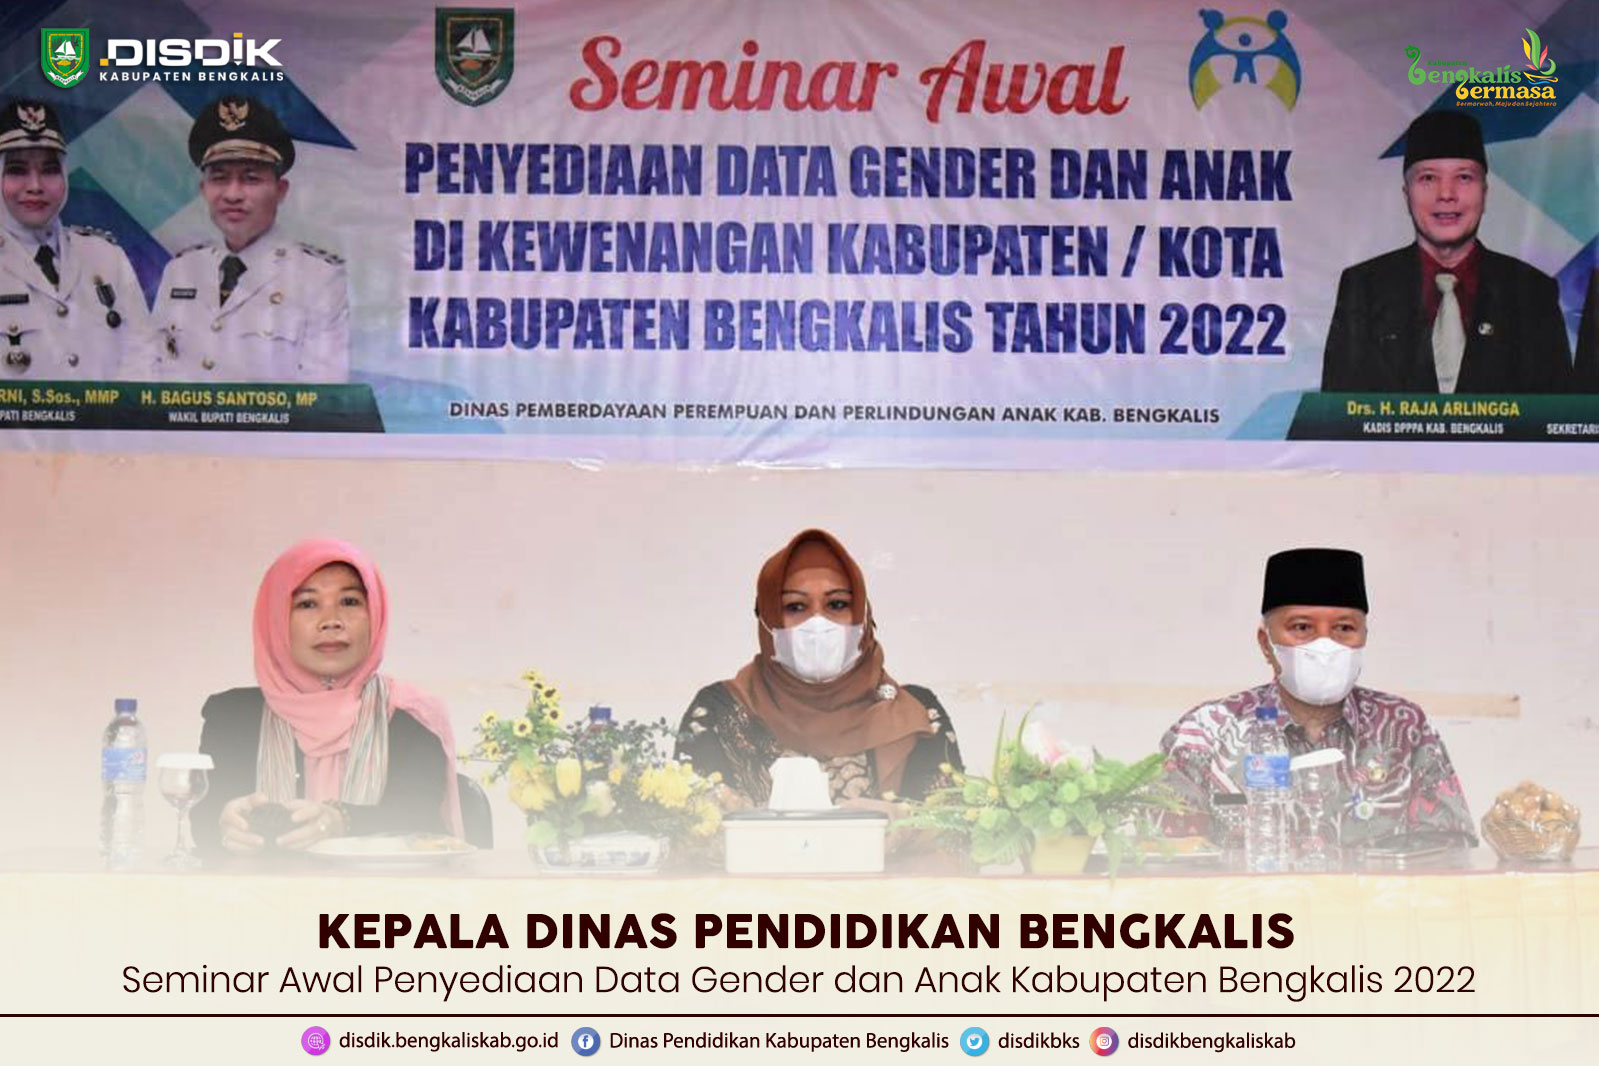 Seminar Awal Penyediaan Data Gender dan Anak Kabupaten Bengkalis 2022